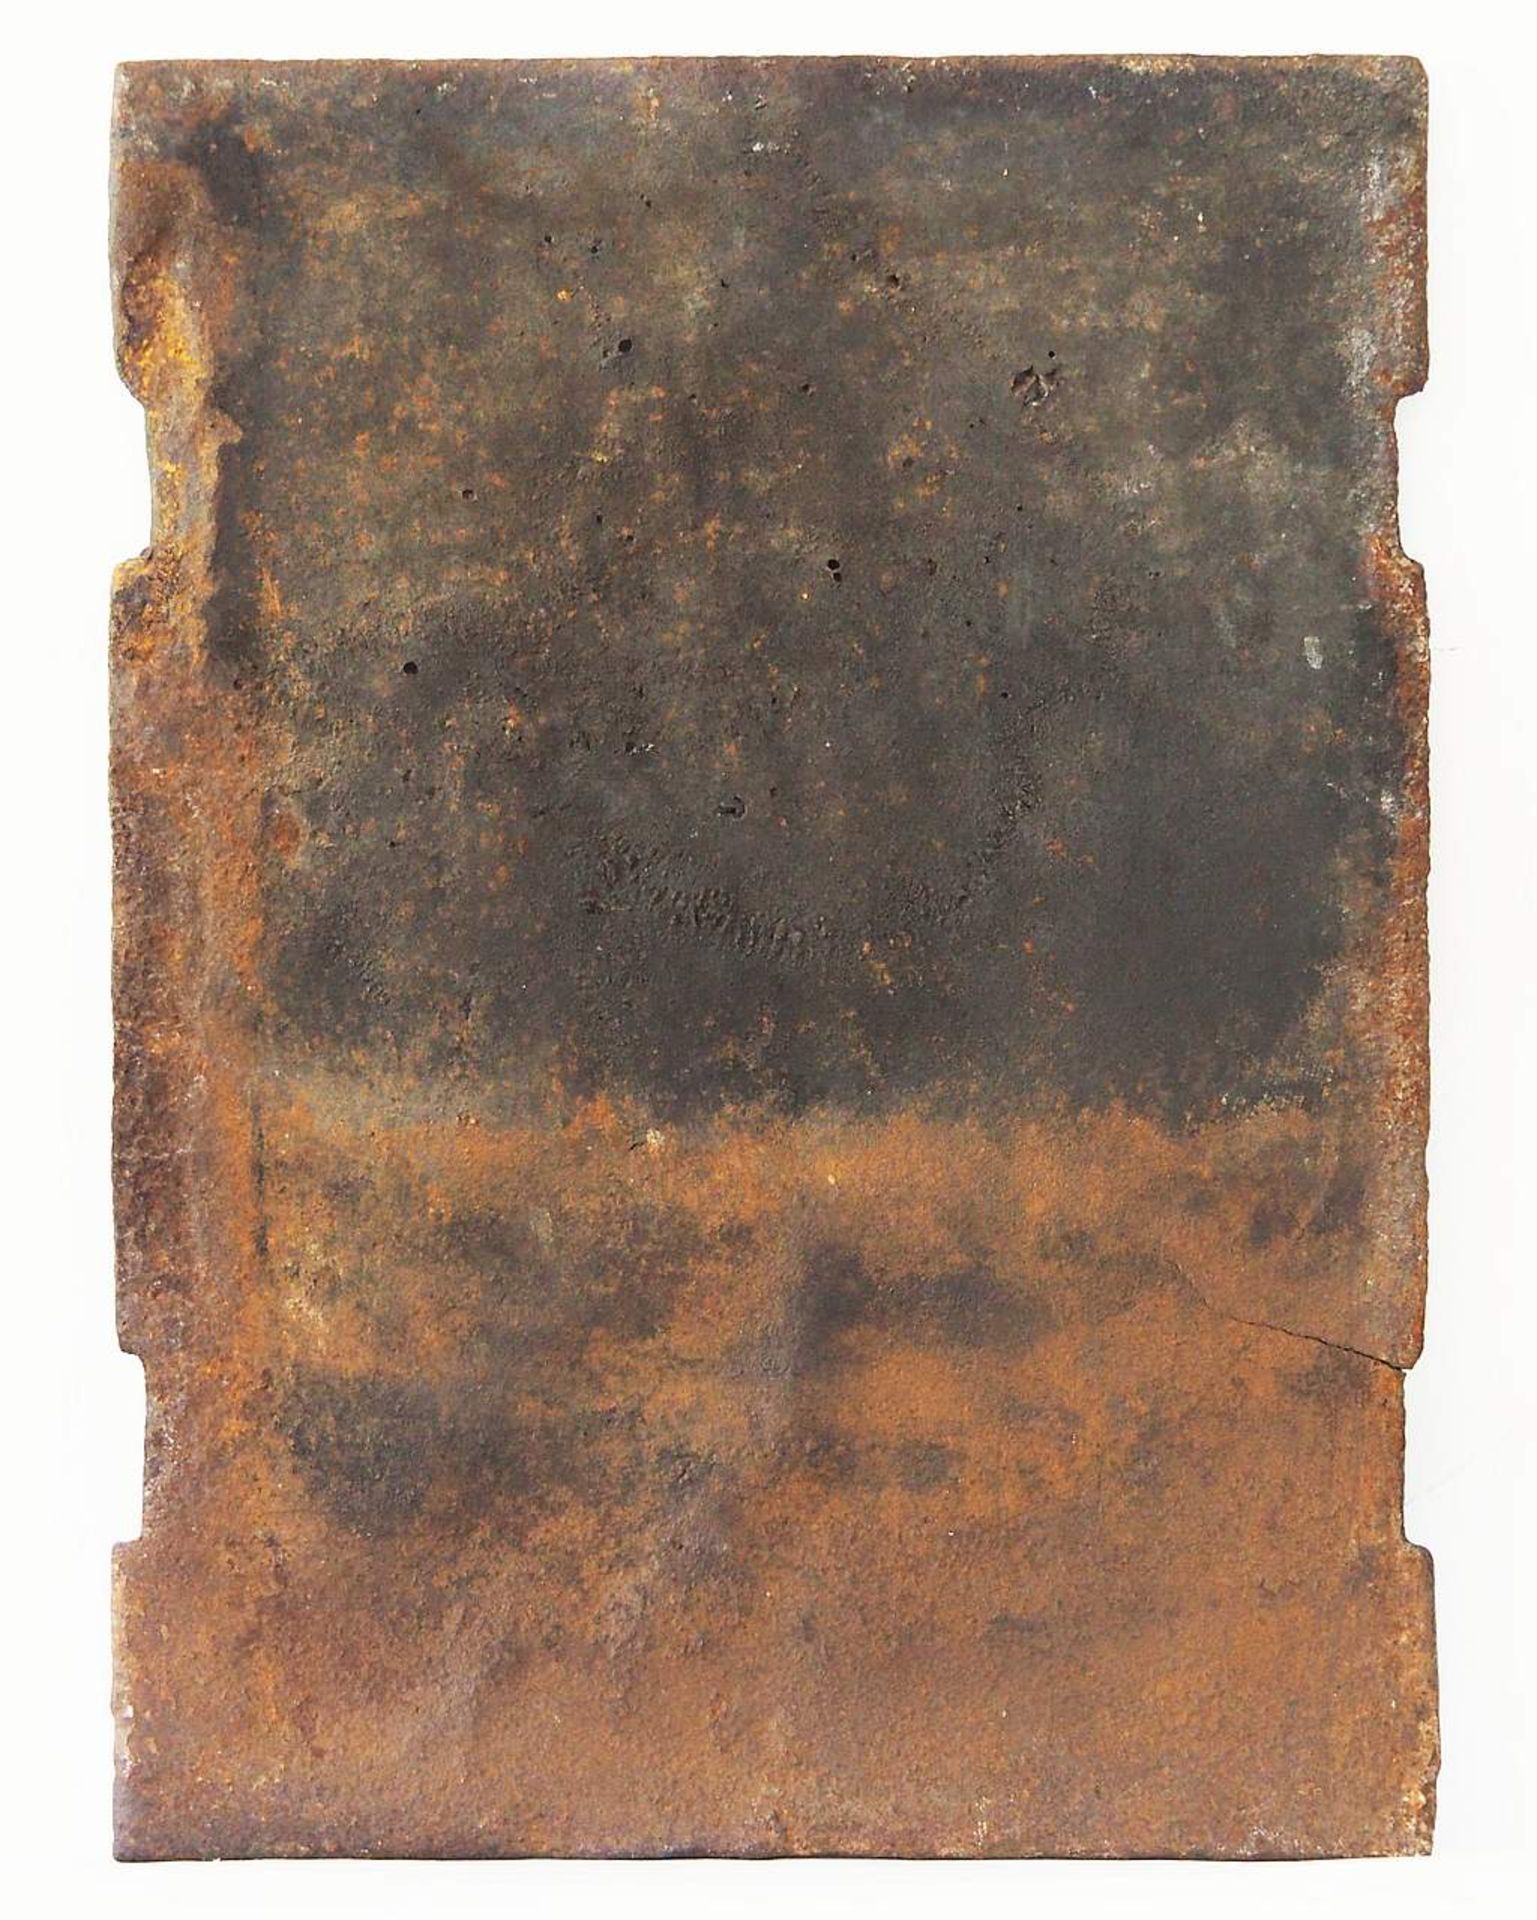 Gusseiserne Kaminplatte, bekrönter Doppeladler mit freier Kartusche, unten mit Jahreszahl 1716. - Image 5 of 5